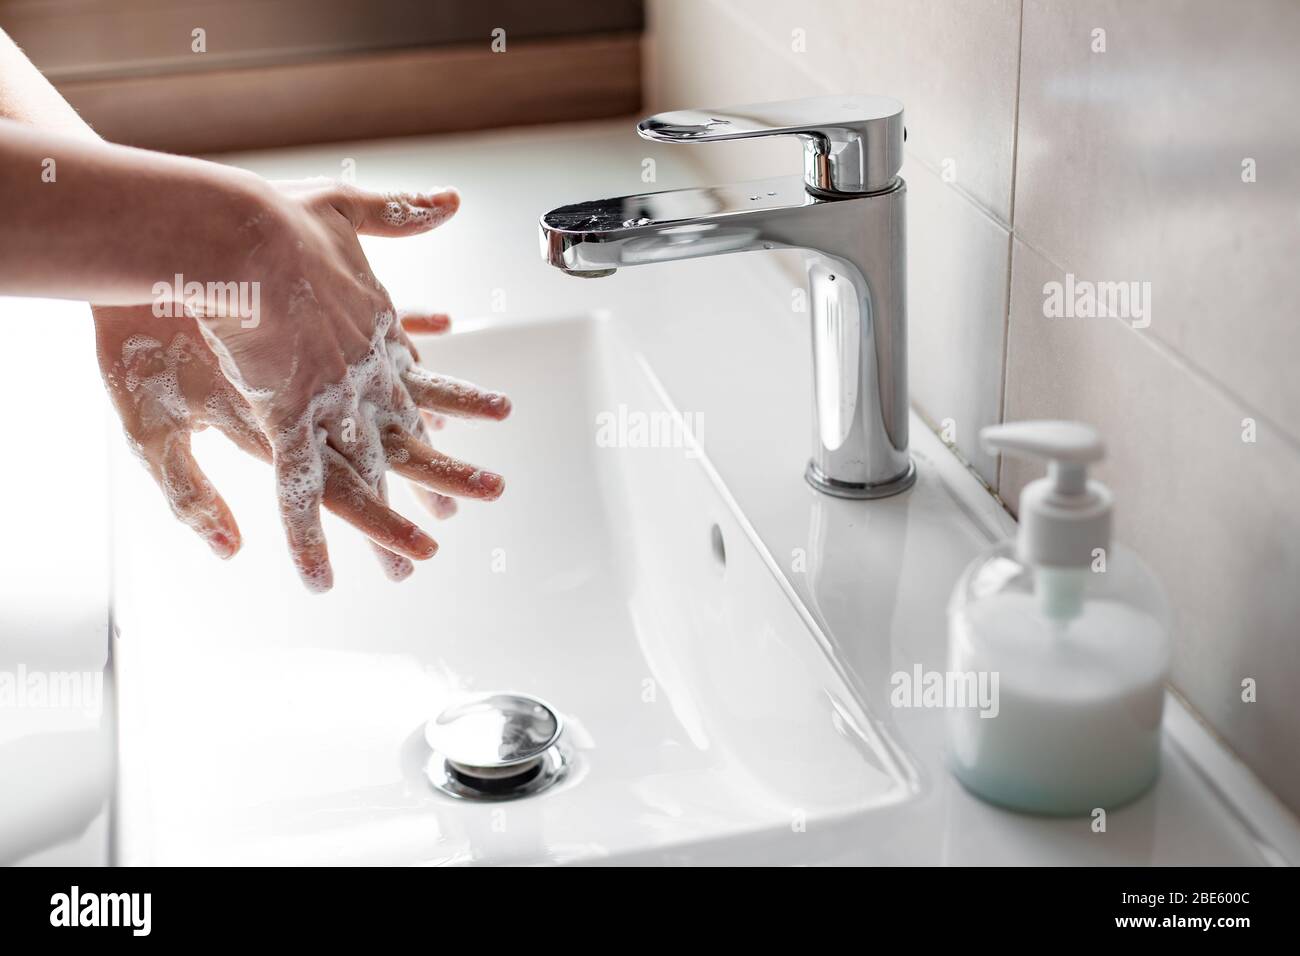 Laver les mains avec du savon pour prévenir l'infection du coronavirus Banque D'Images